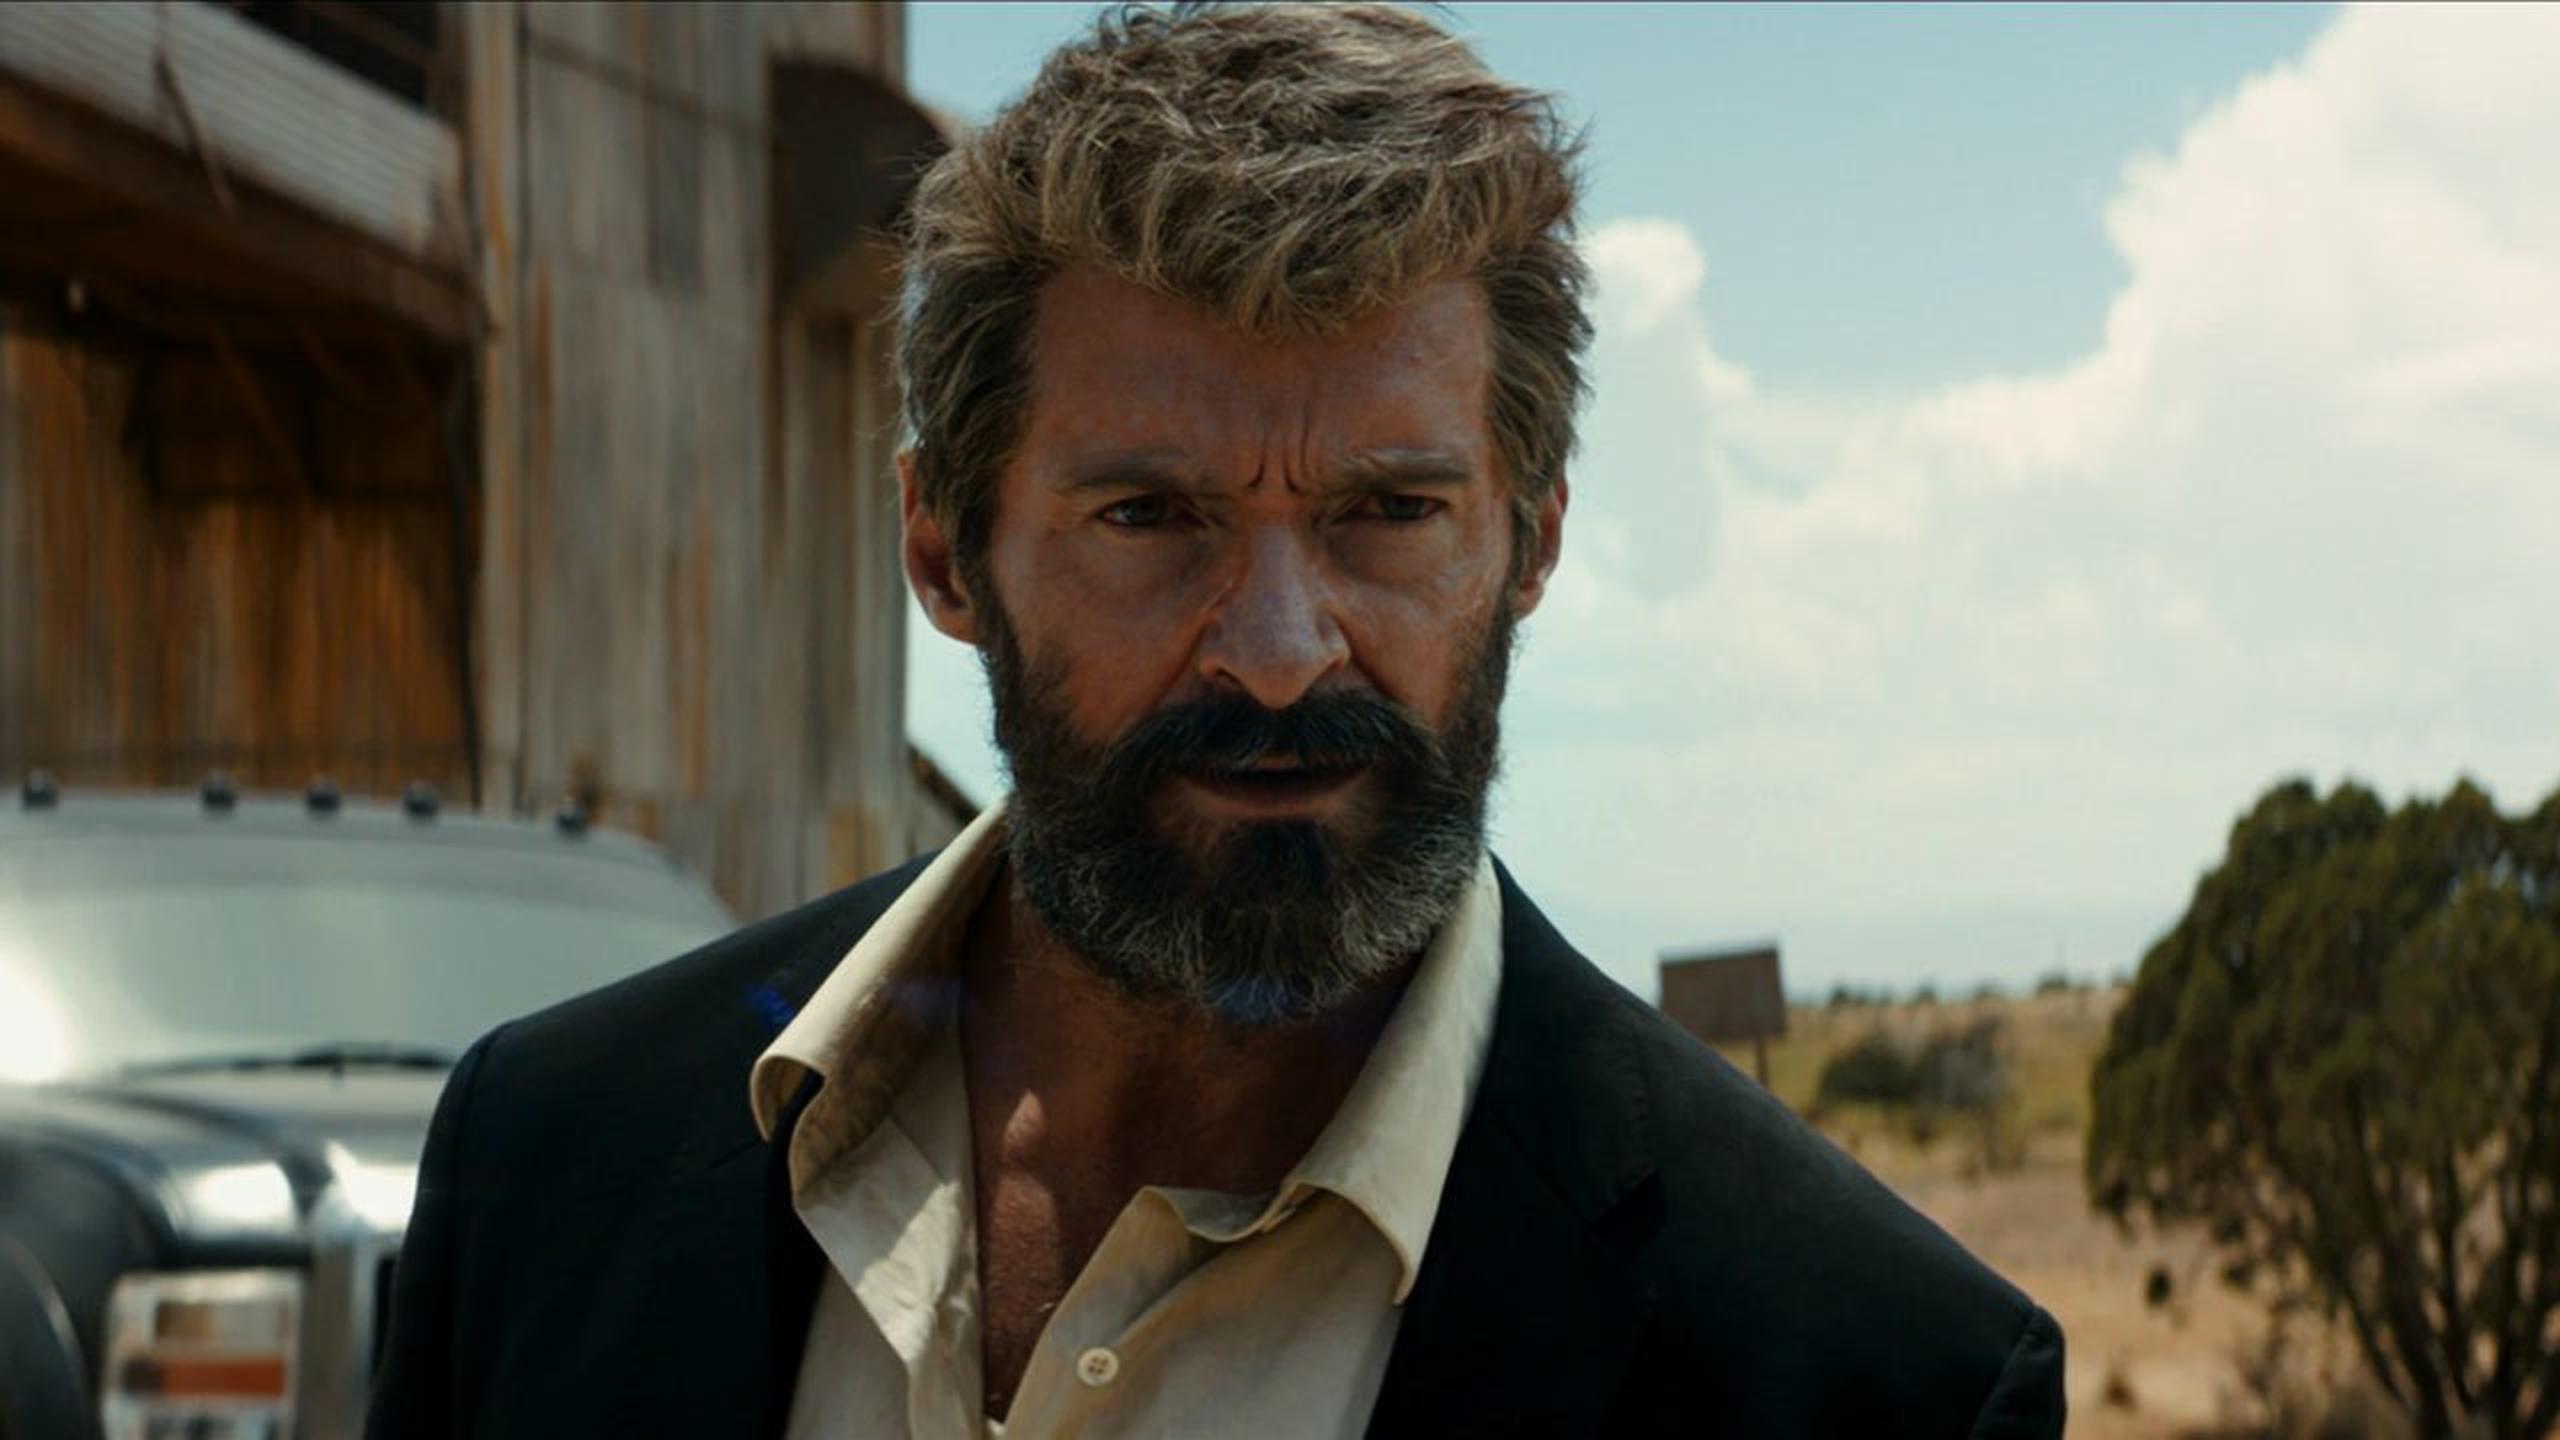 Hugh Jackman encarna nuevamente al mutante Wolverine en una cinta que lleva este personaje al límite.